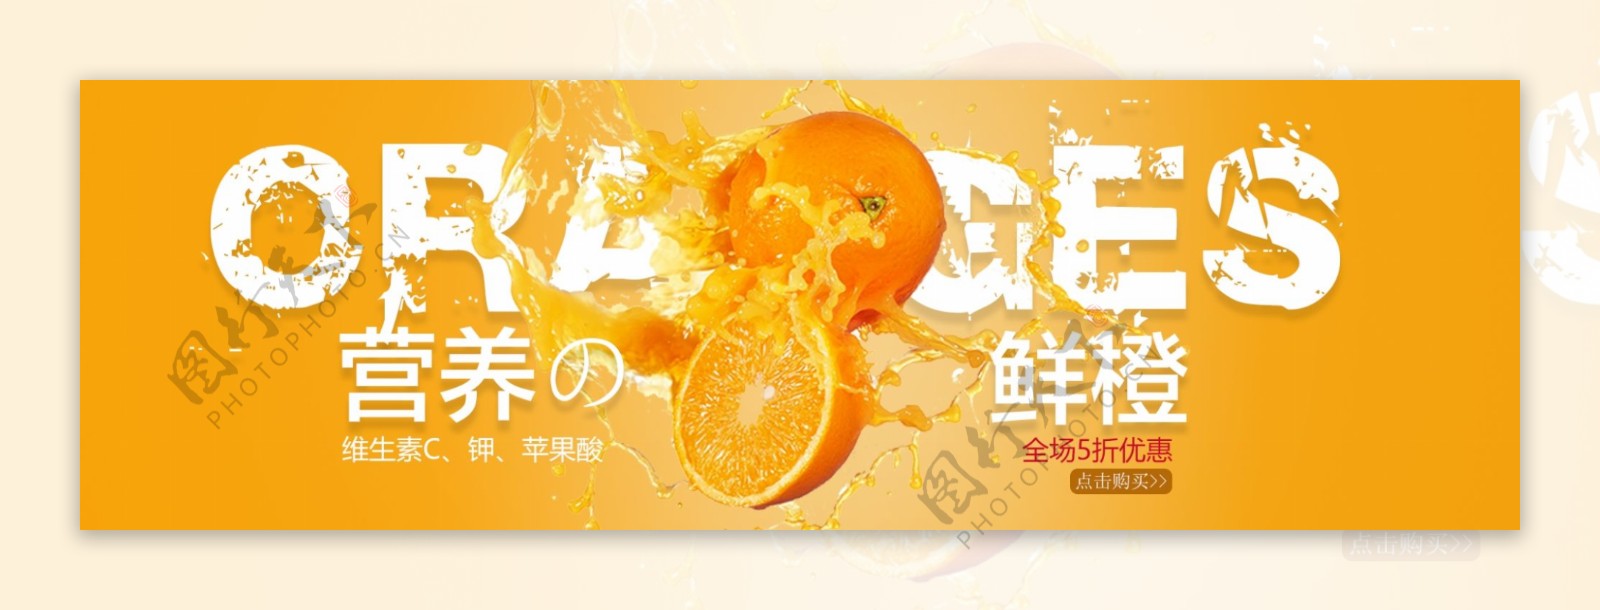 营养橙子促销淘宝banner